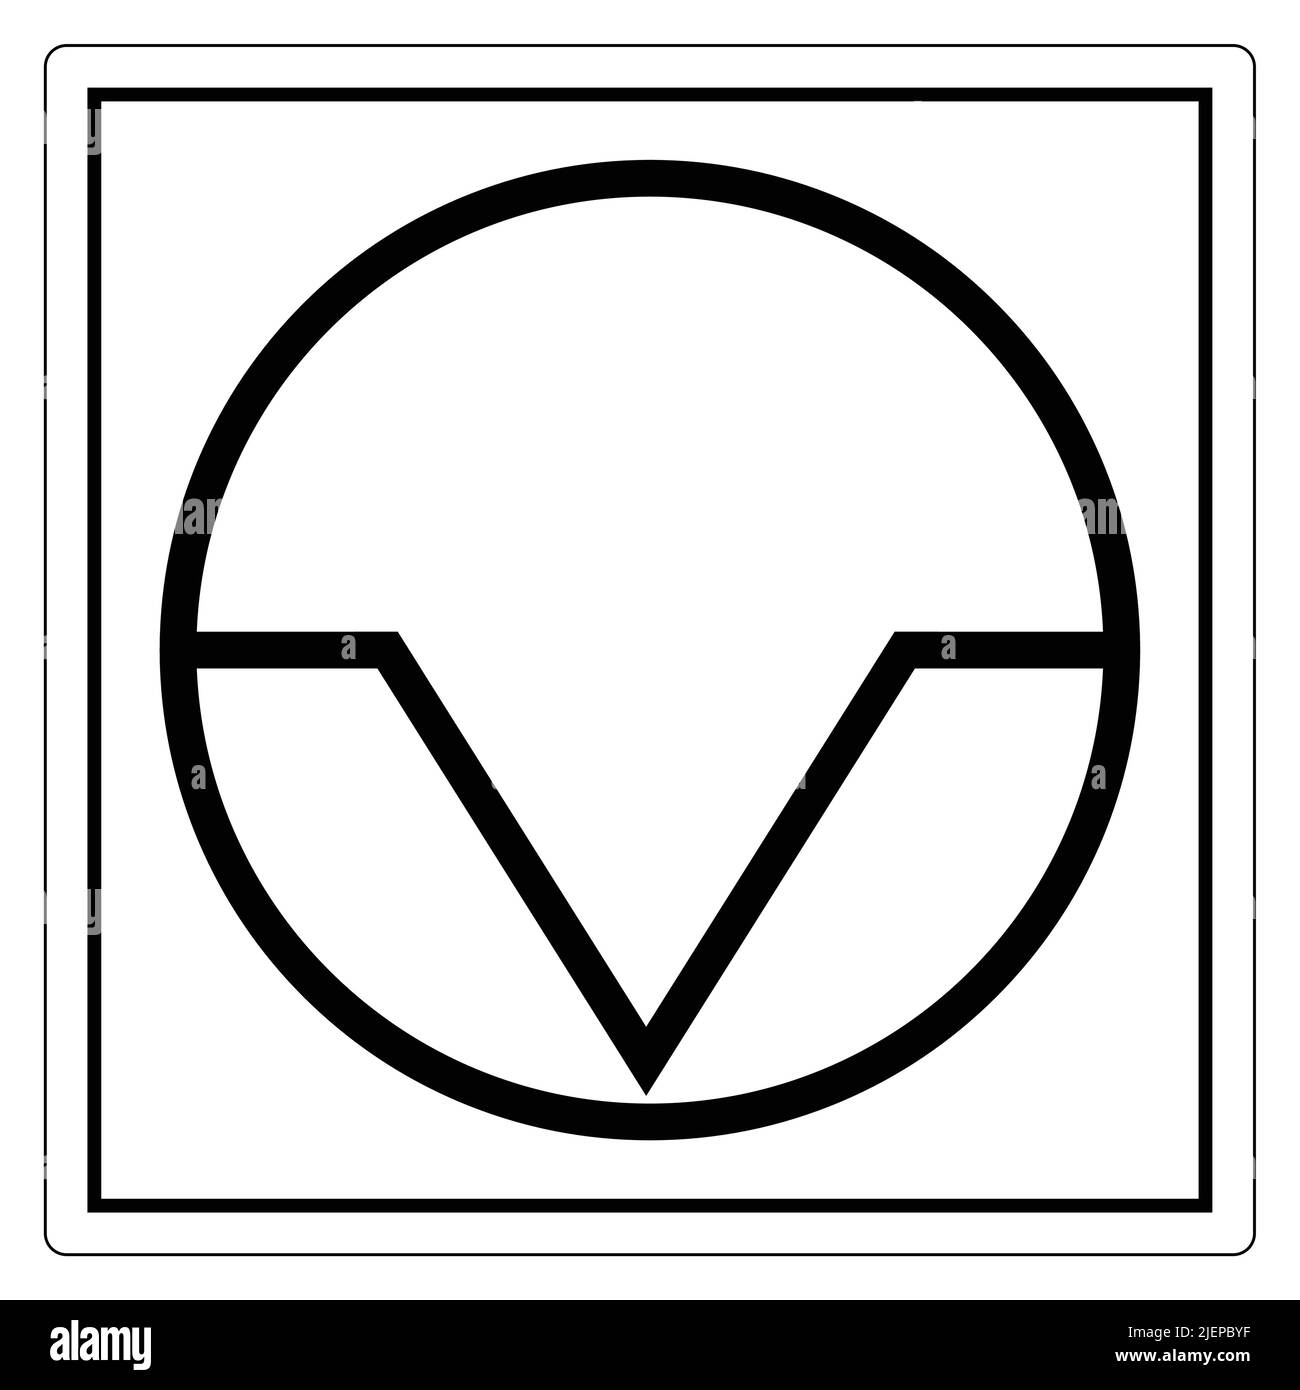 Interruzione di pausa simbolo segno isolare su sfondo bianco,Illustrazione vettoriale EPS.10 Illustrazione Vettoriale